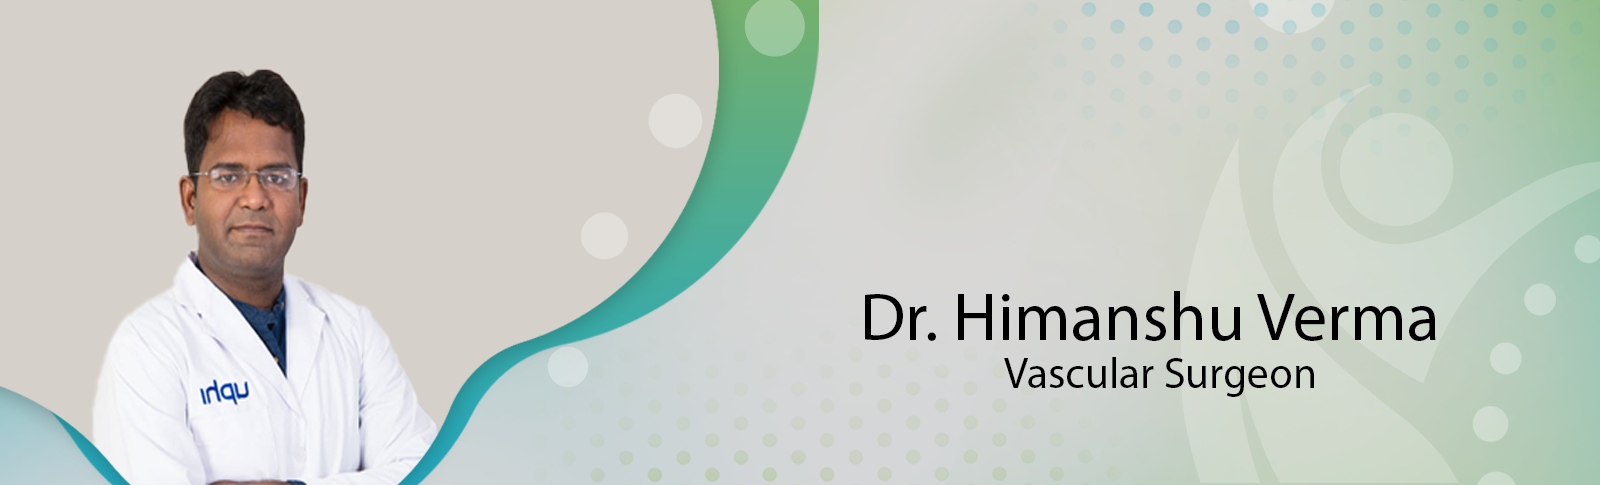 Dr. Himanshu Verma